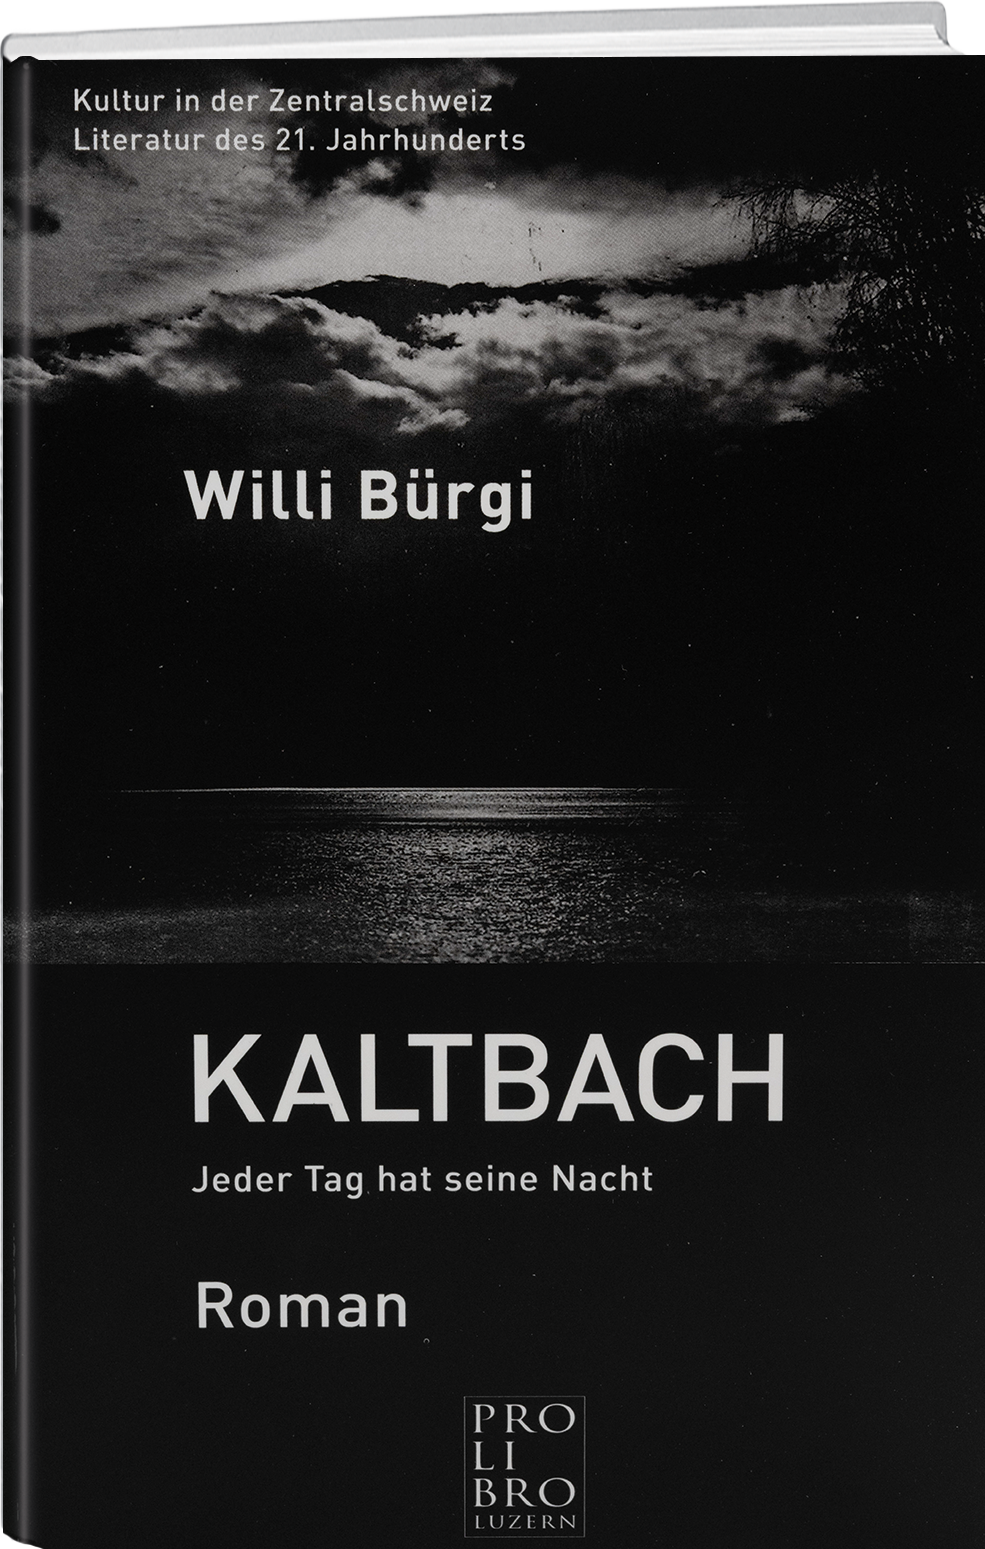 Willi Bürgi: Kaltbach – Jeder Tag hat seine Nacht - WEBER VERLAG